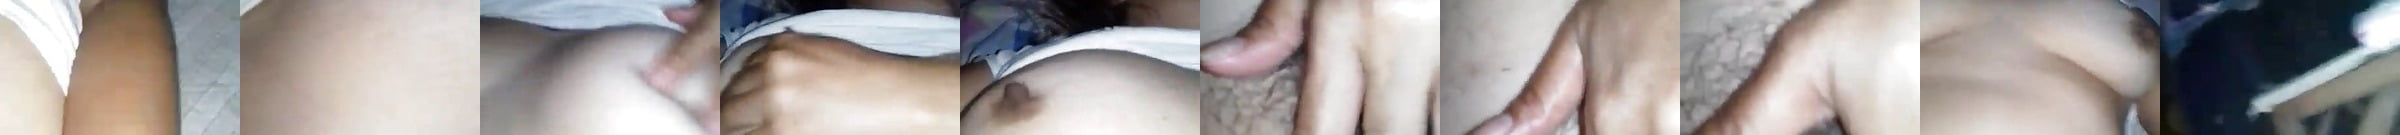 Filipina Granny Porn Videos Xhamster